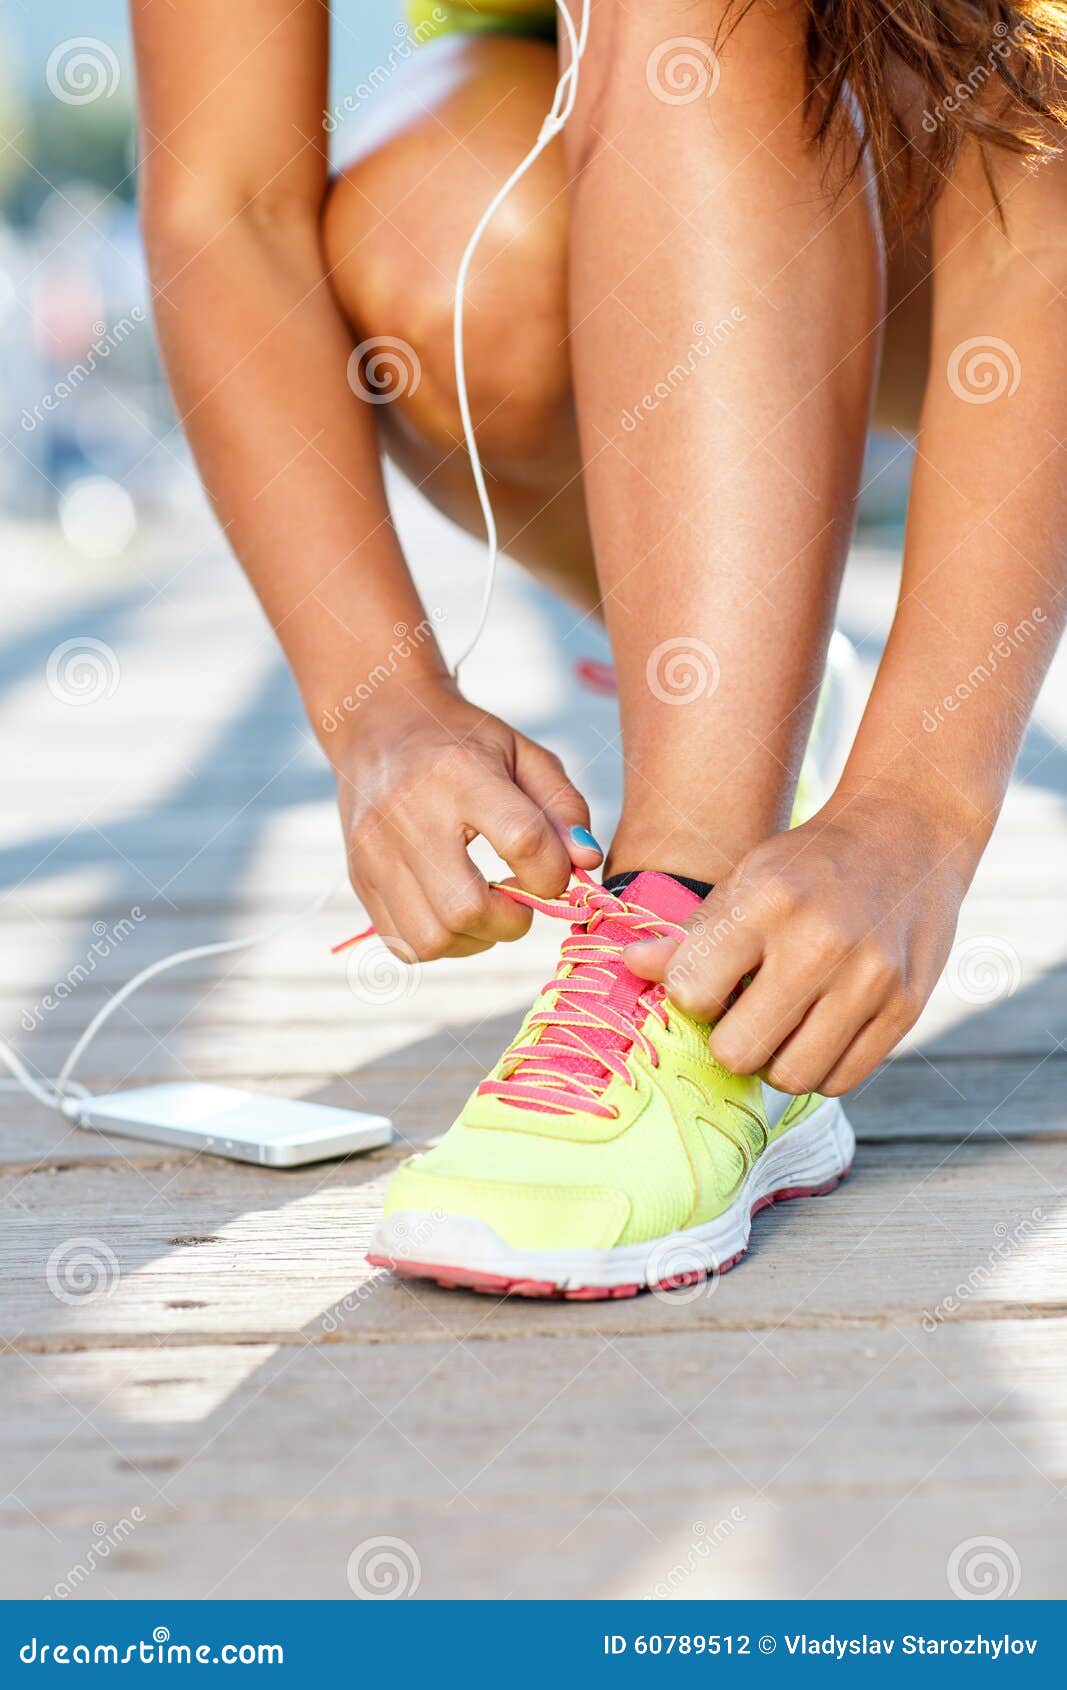 Zapatillas Deportivas - Mujer Que Ata El Primer De Los Cordones De